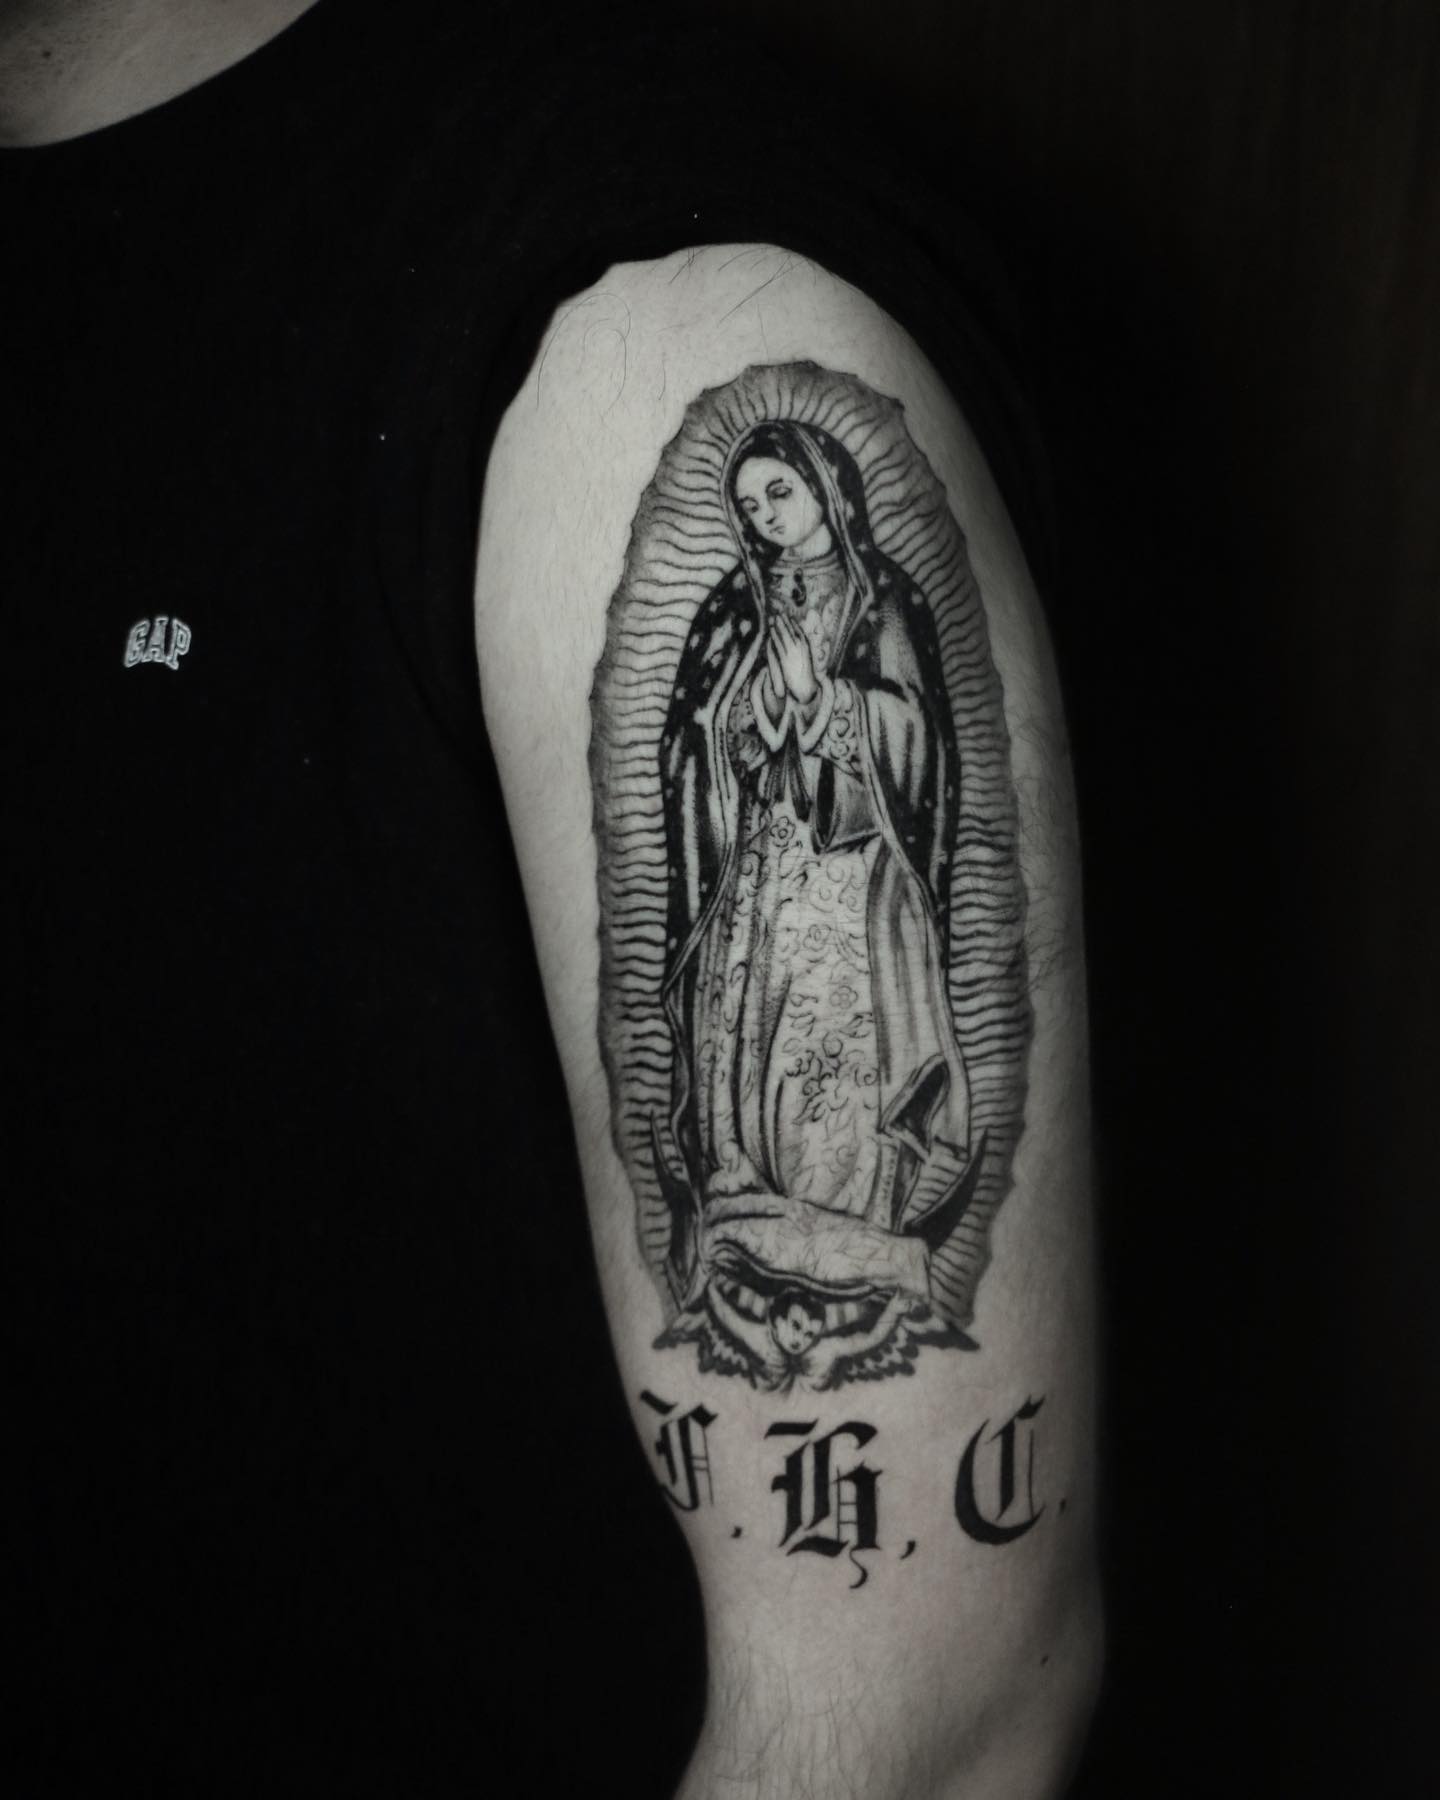 Dotwork tatuaje de la Virgen de Guadalupe